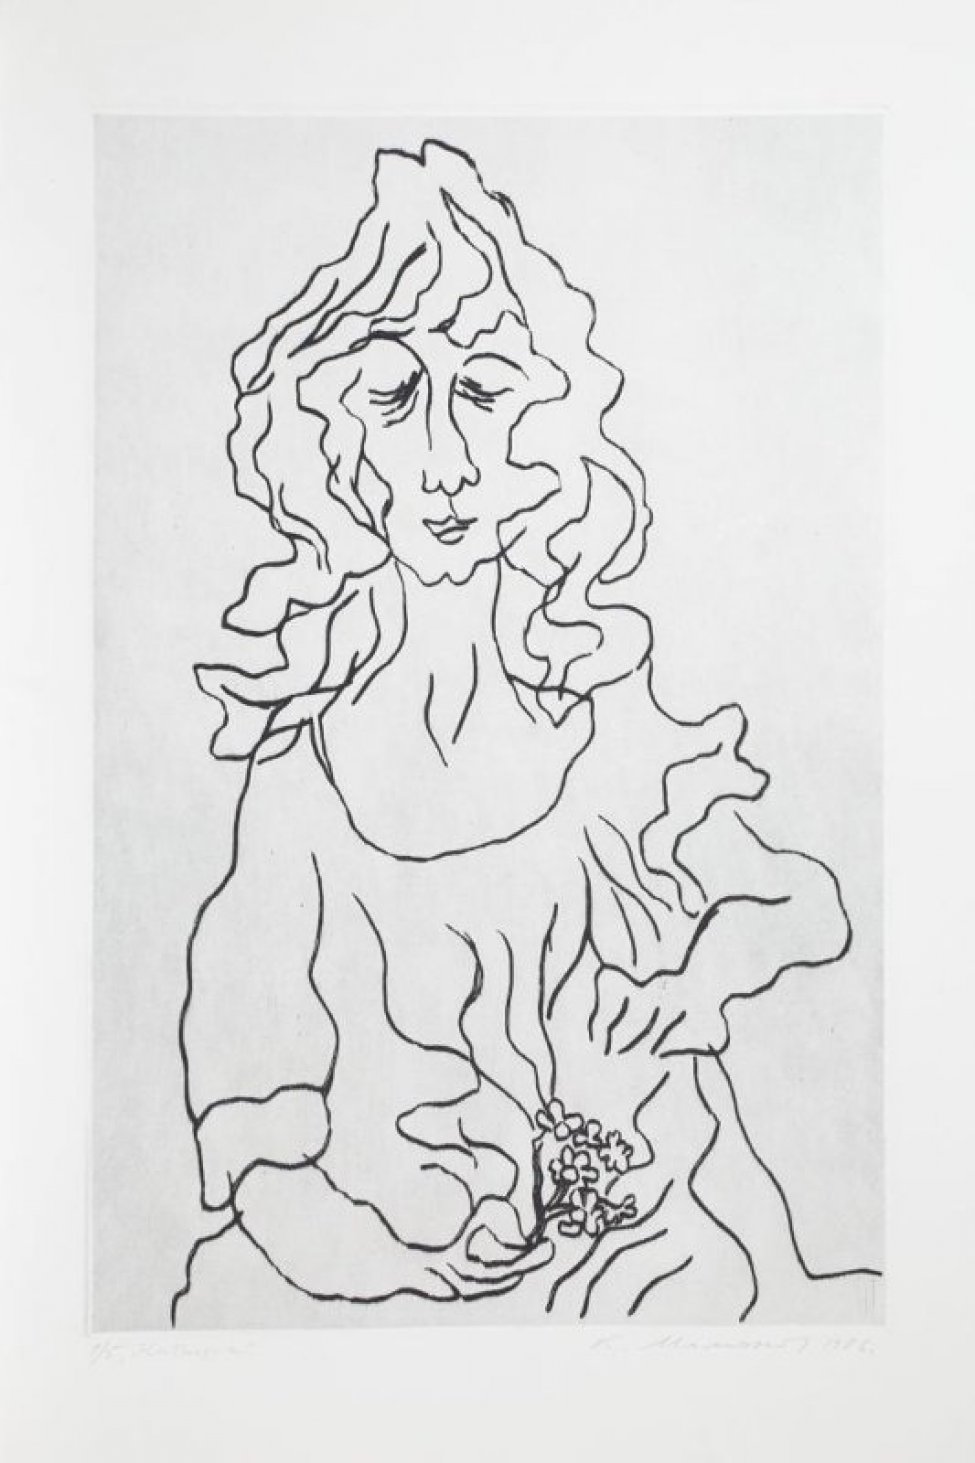 Победренное изображение анфас женщины с закрытыми глазами и волнистыми волосами до плеч; в правой руке - цветущая ветка, левая рука согнута в локте.